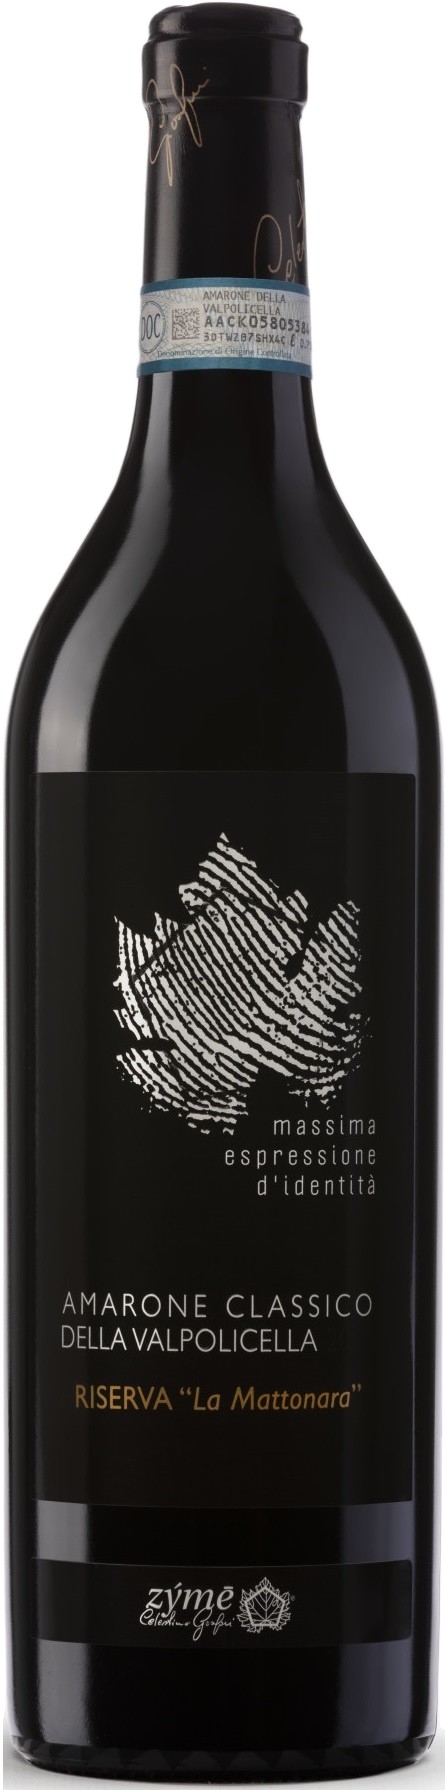 Амароне Ризерва. Вино Amarone della Valpolicella Riserva Classico 2015. Амароне zyme 2005. Valpolicella вино красное сухое.